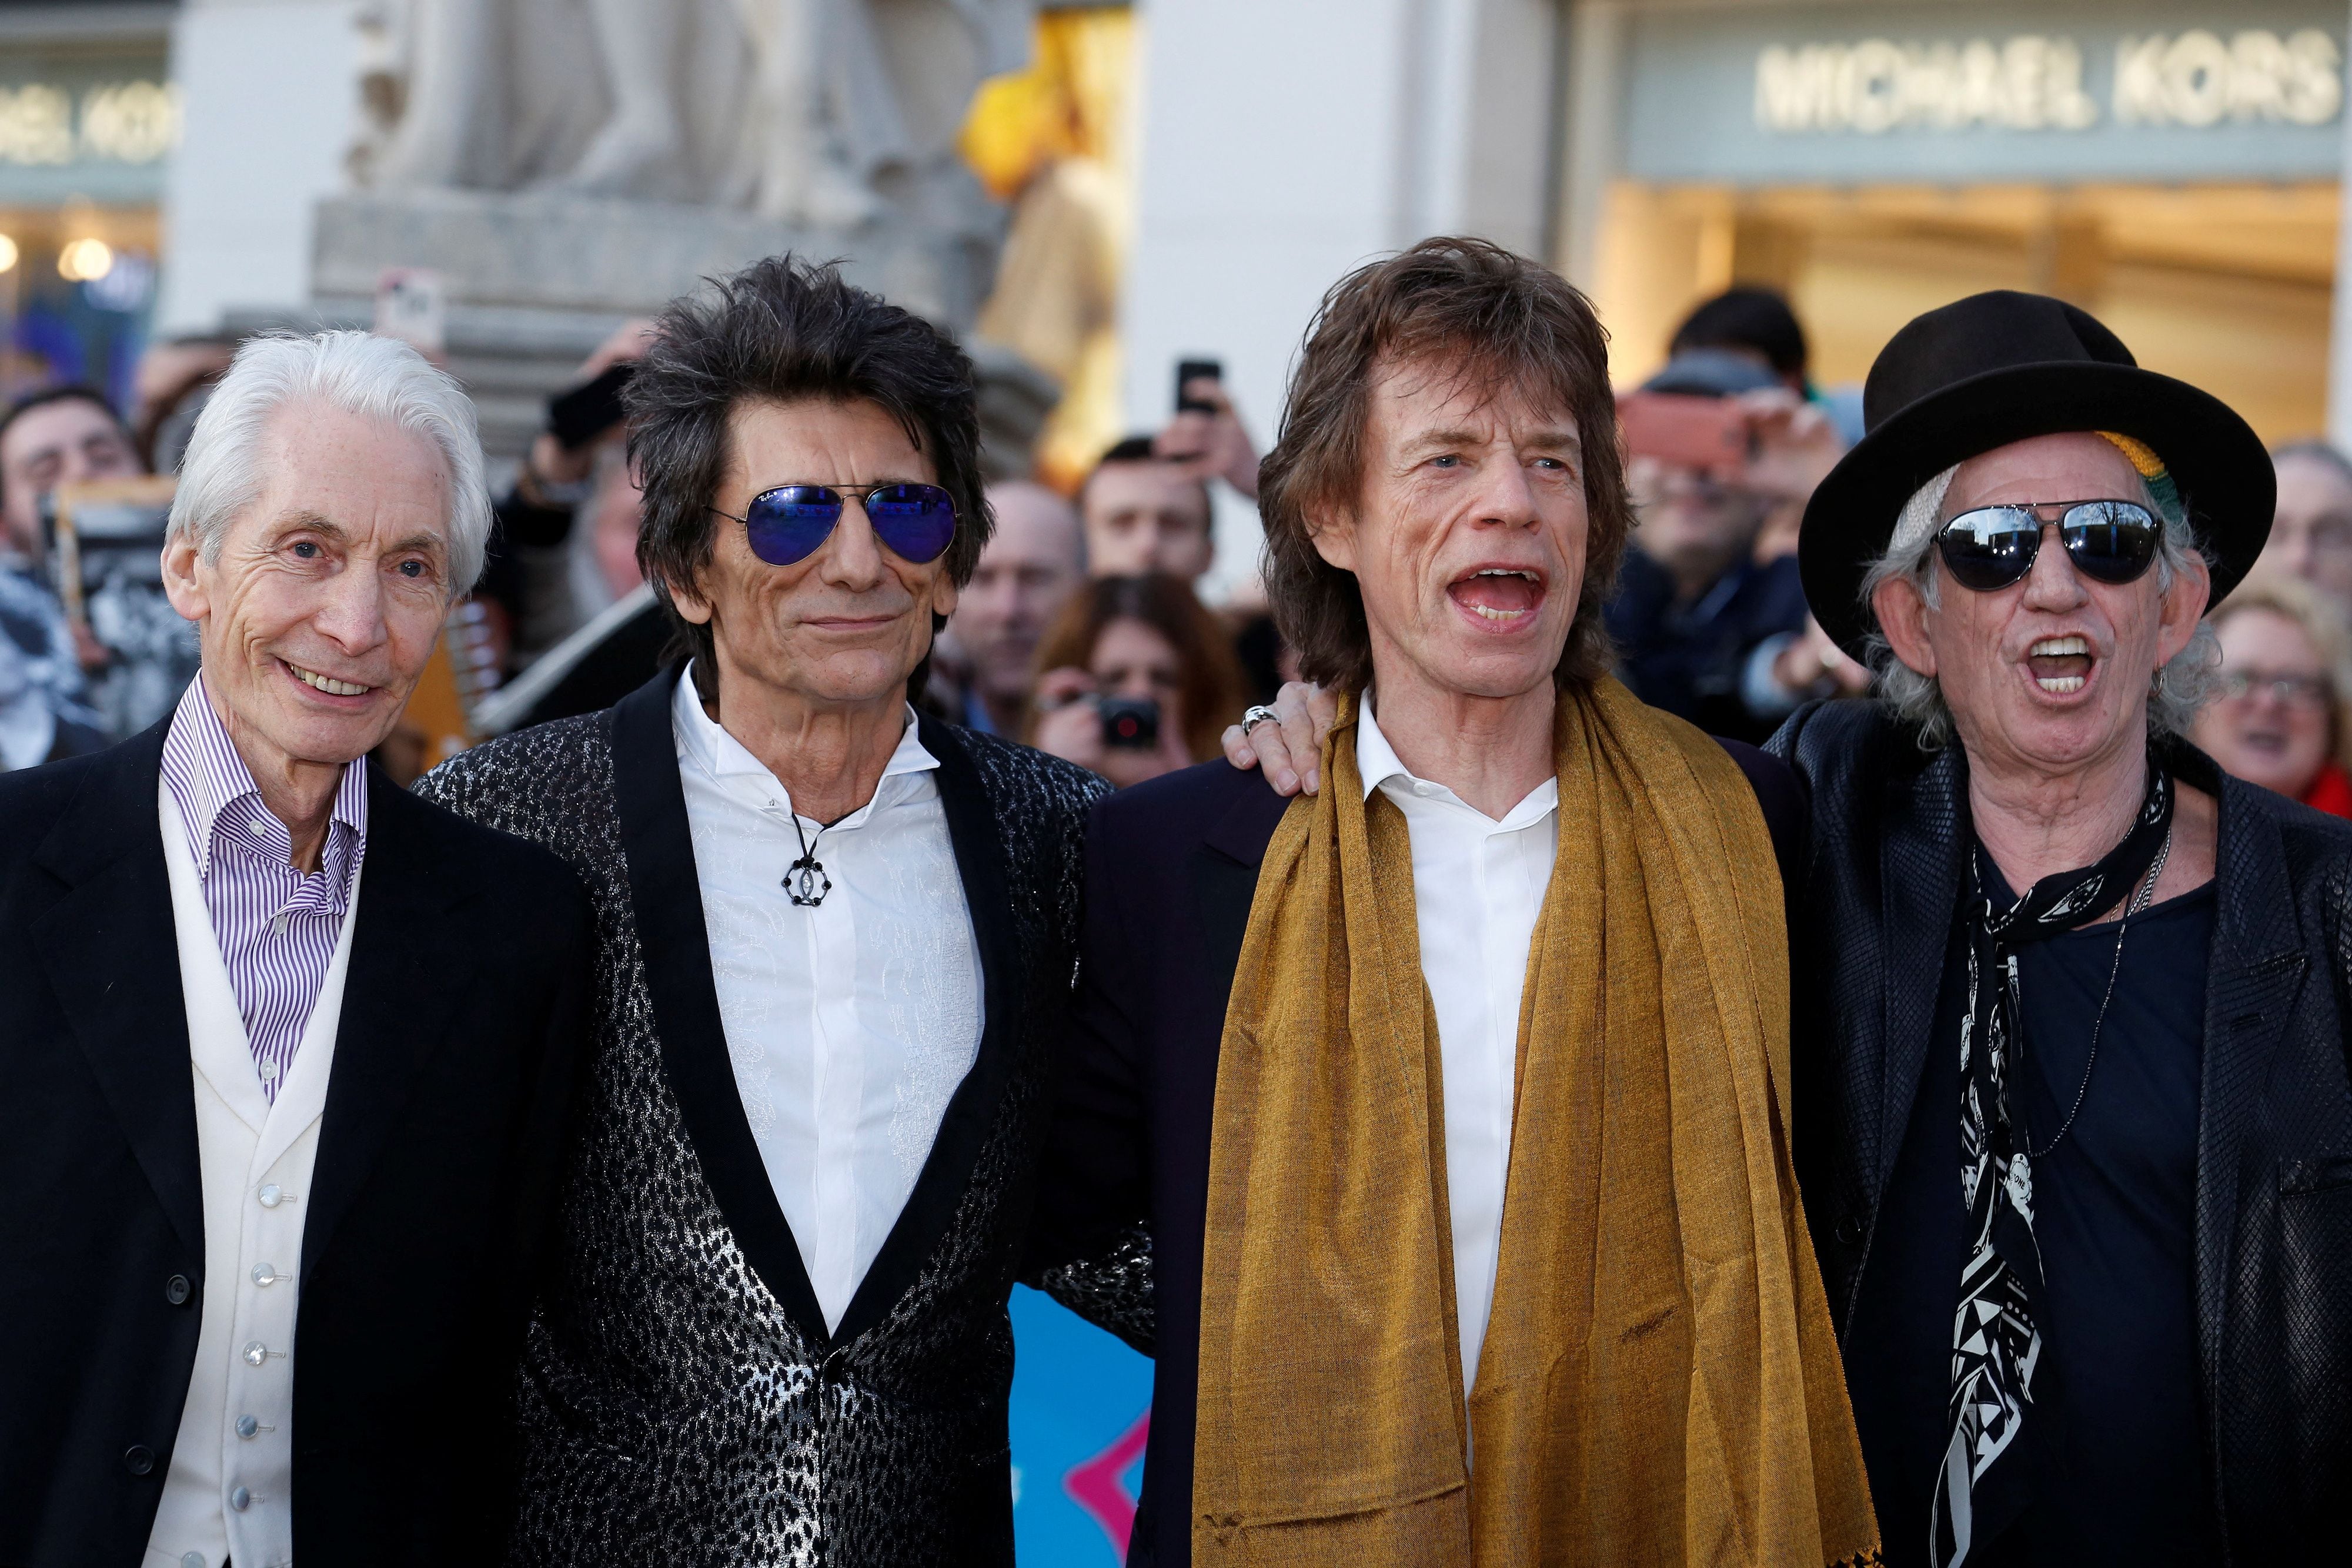 Todos los miembros de Rolling Stones, Charlie Watts, Ronnie Wood, Mick Jagger y Keith Richards se cuidan realizan rutinas saludables (REUTERS/Luke MacGregor/File Photo)